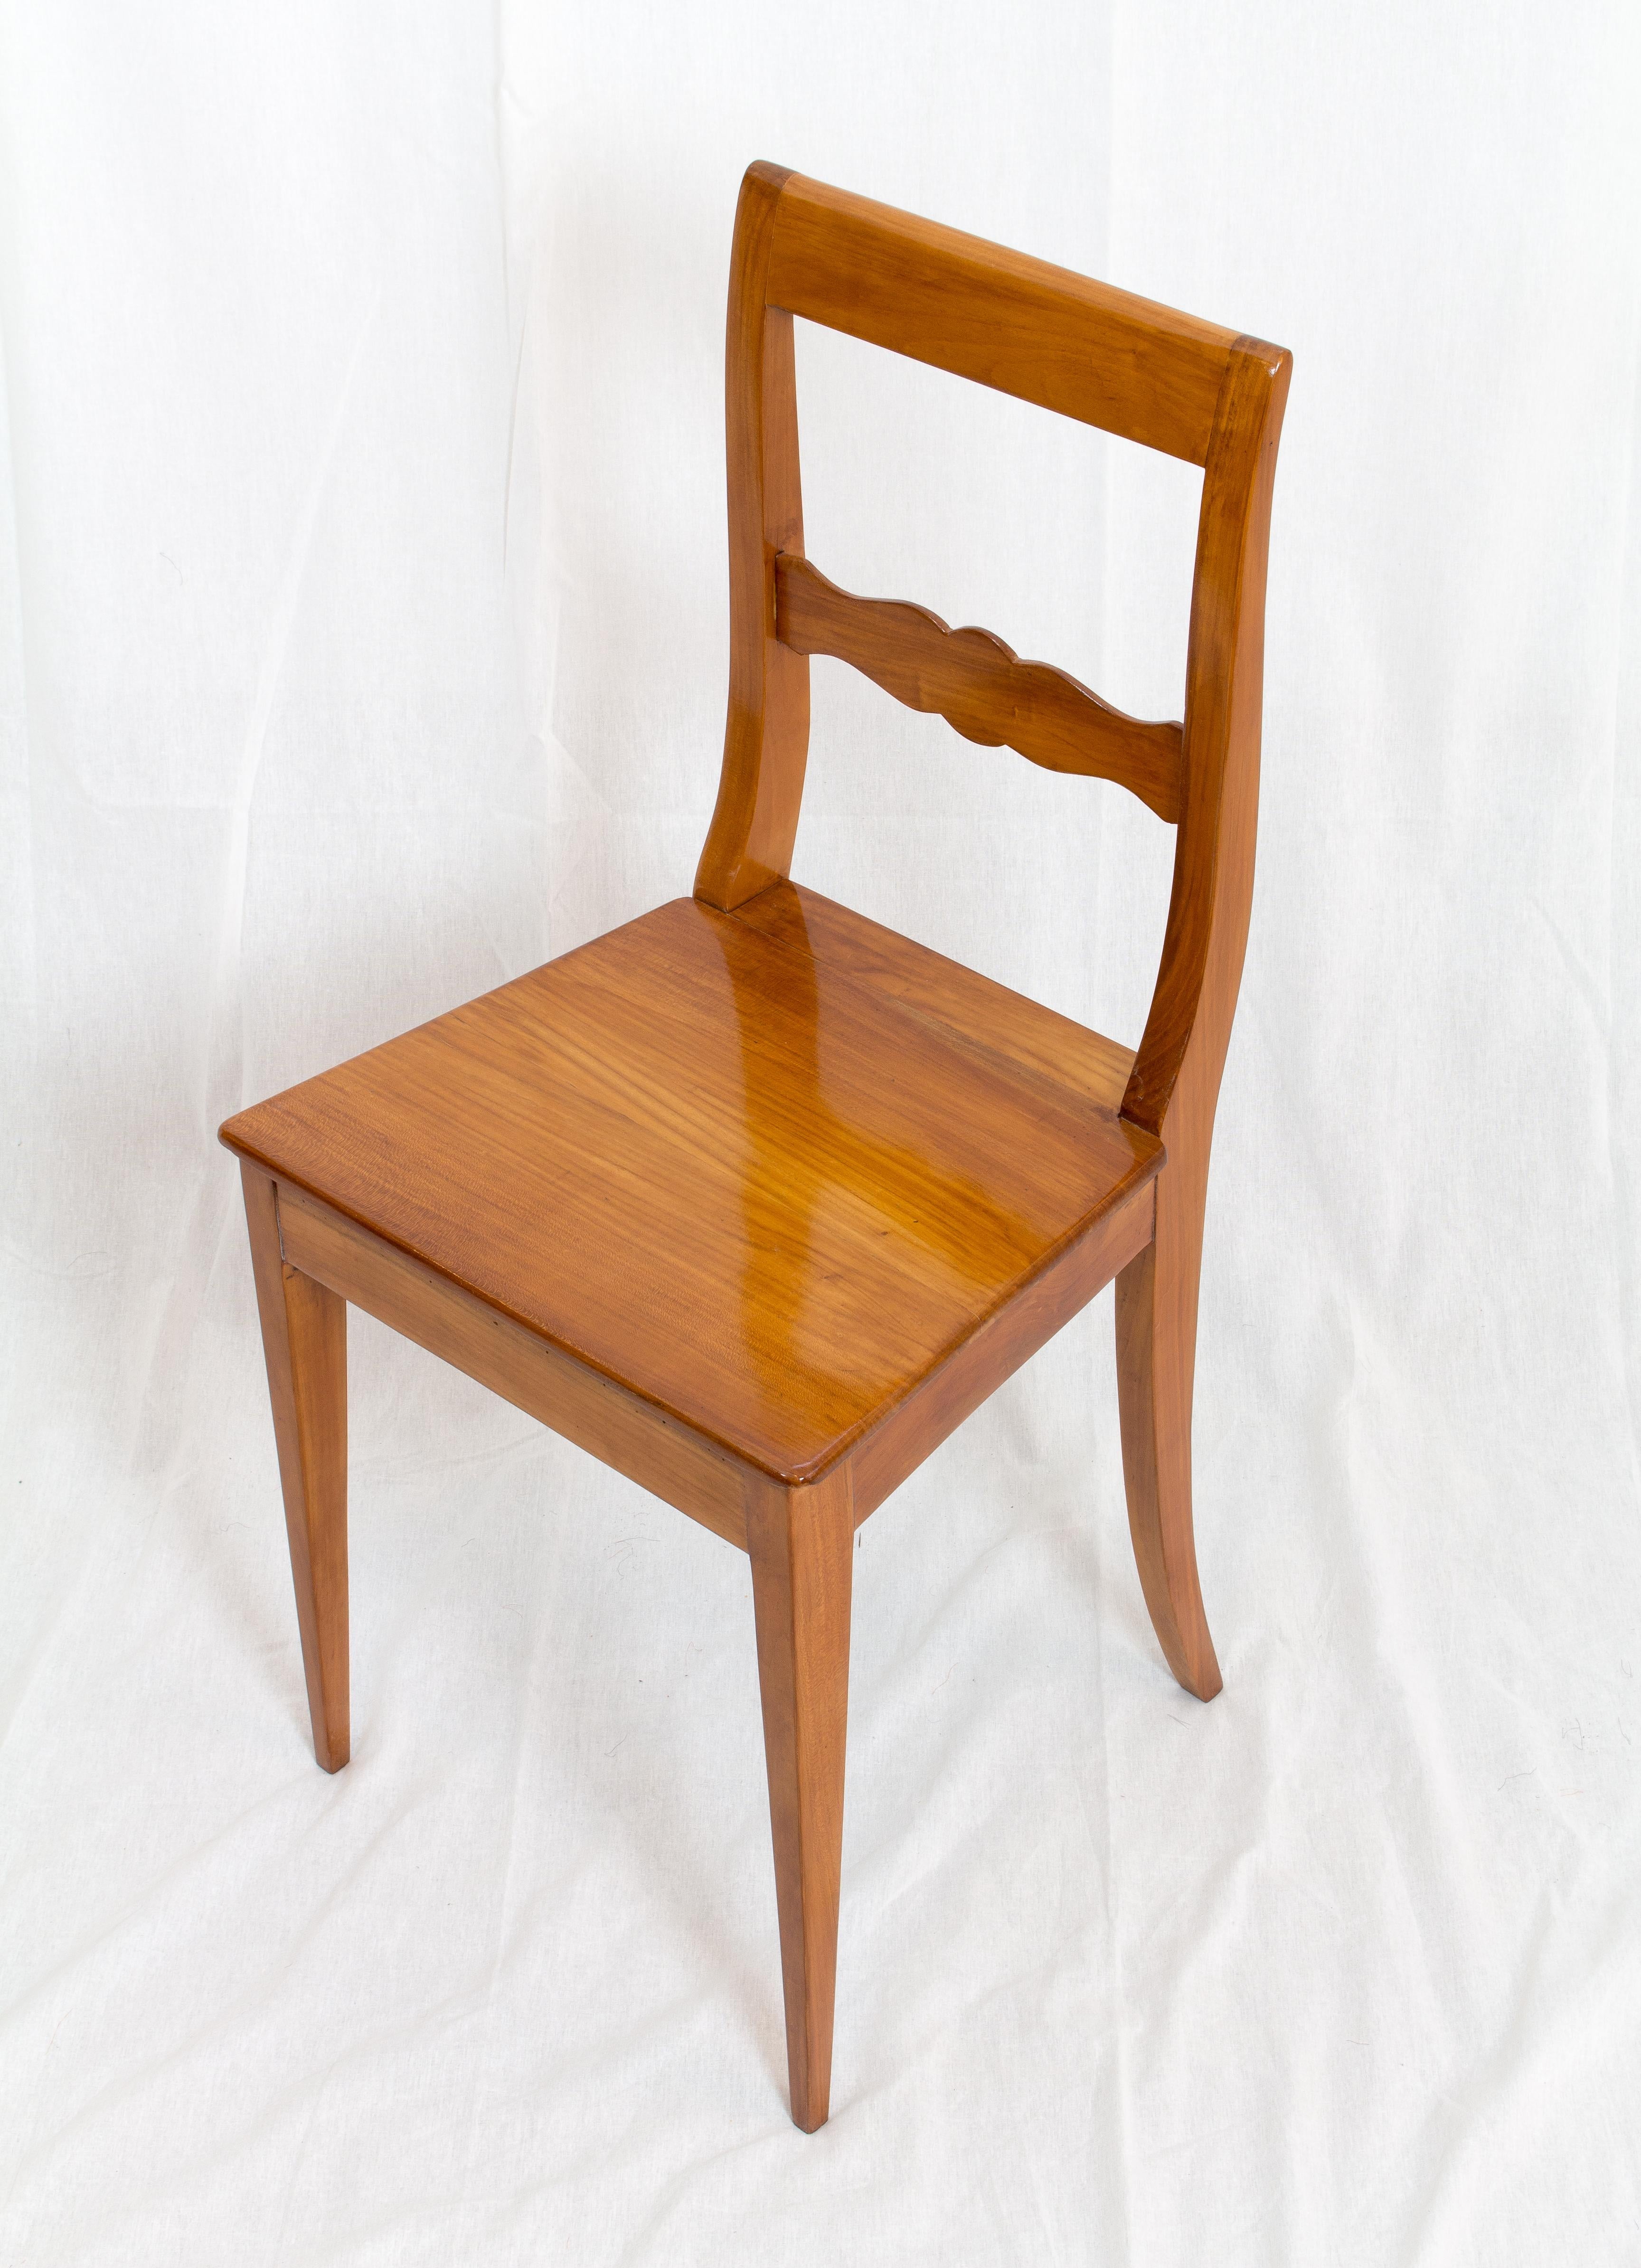 Polished 19th Century Biedermeier Cherrywood Chair